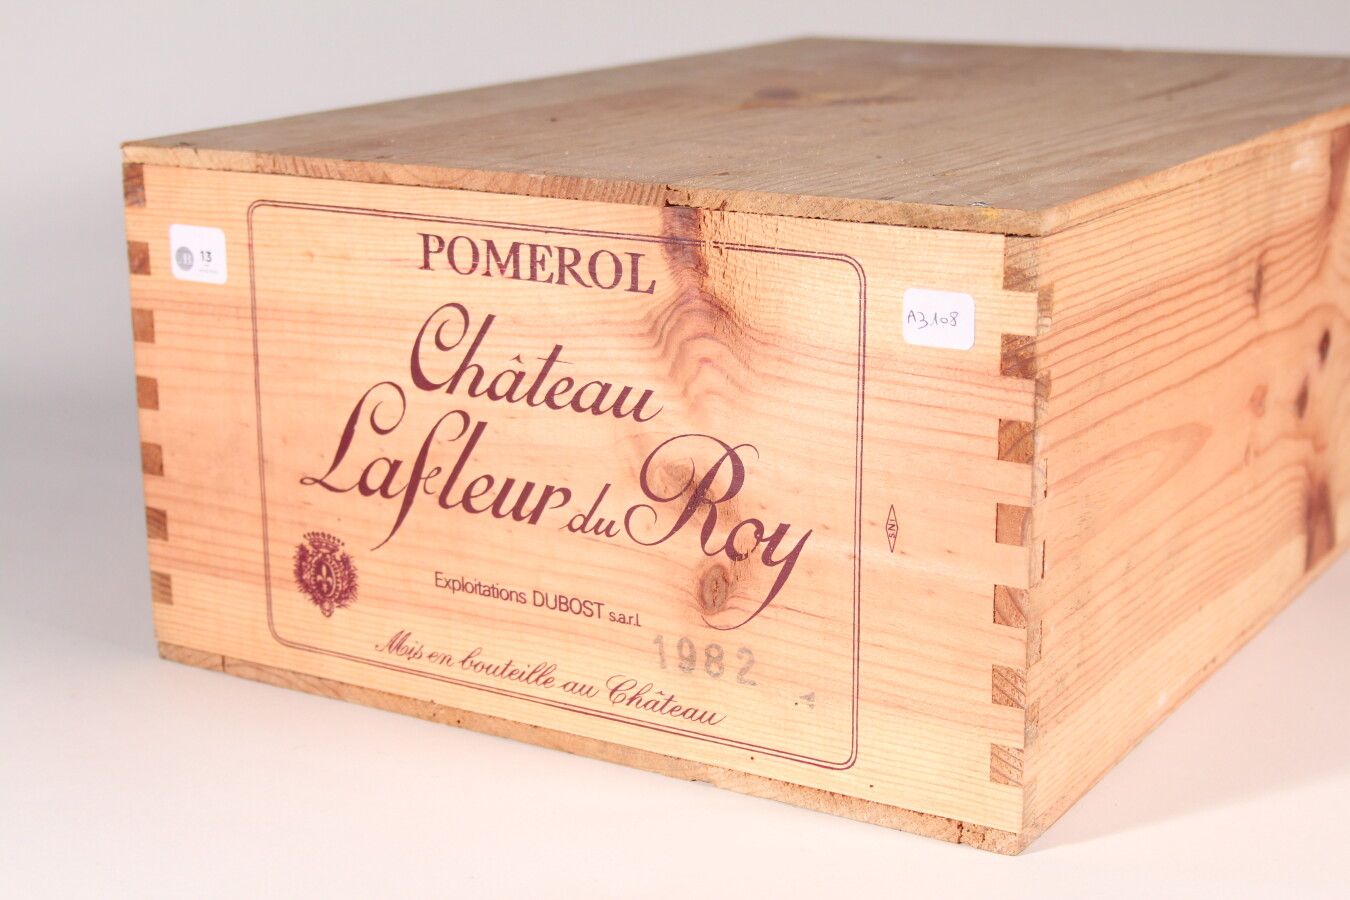 Null 1982 - Château La Fleur du Roy

Roter Pomerol - 12 Flaschen CBO